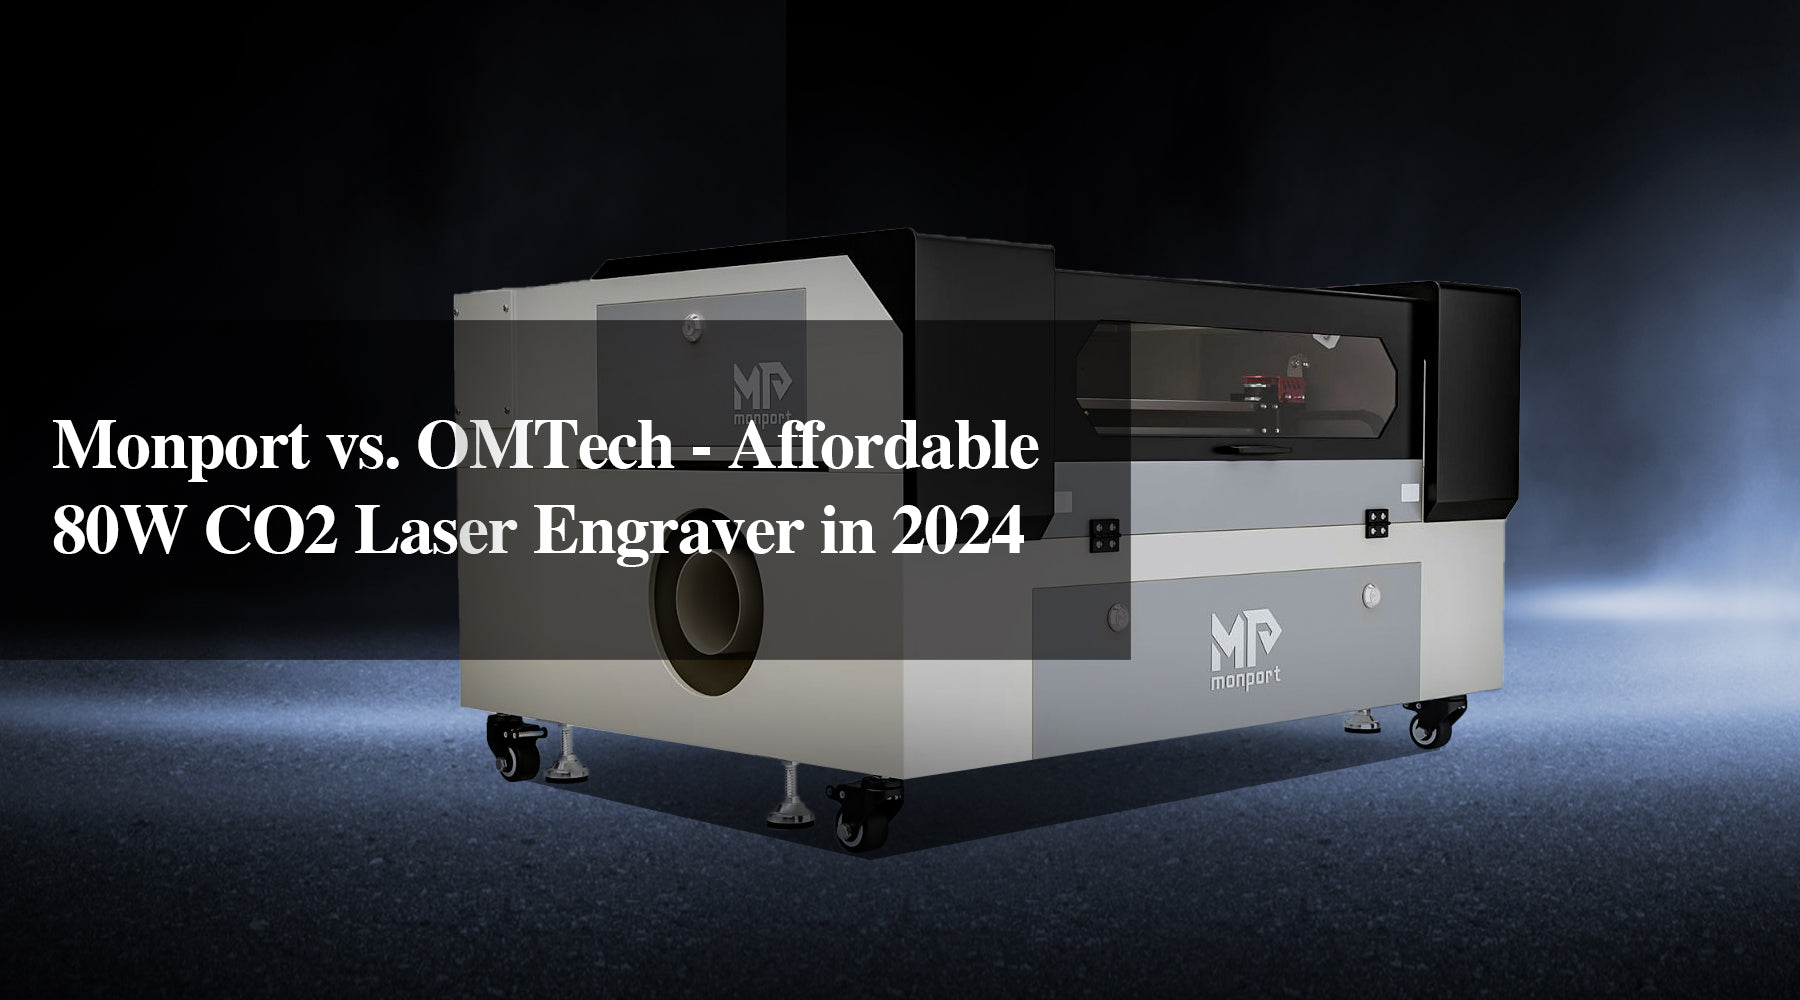 Monport vs. OMTech - Affordable 80W CO2 Laser Engraver in 2024